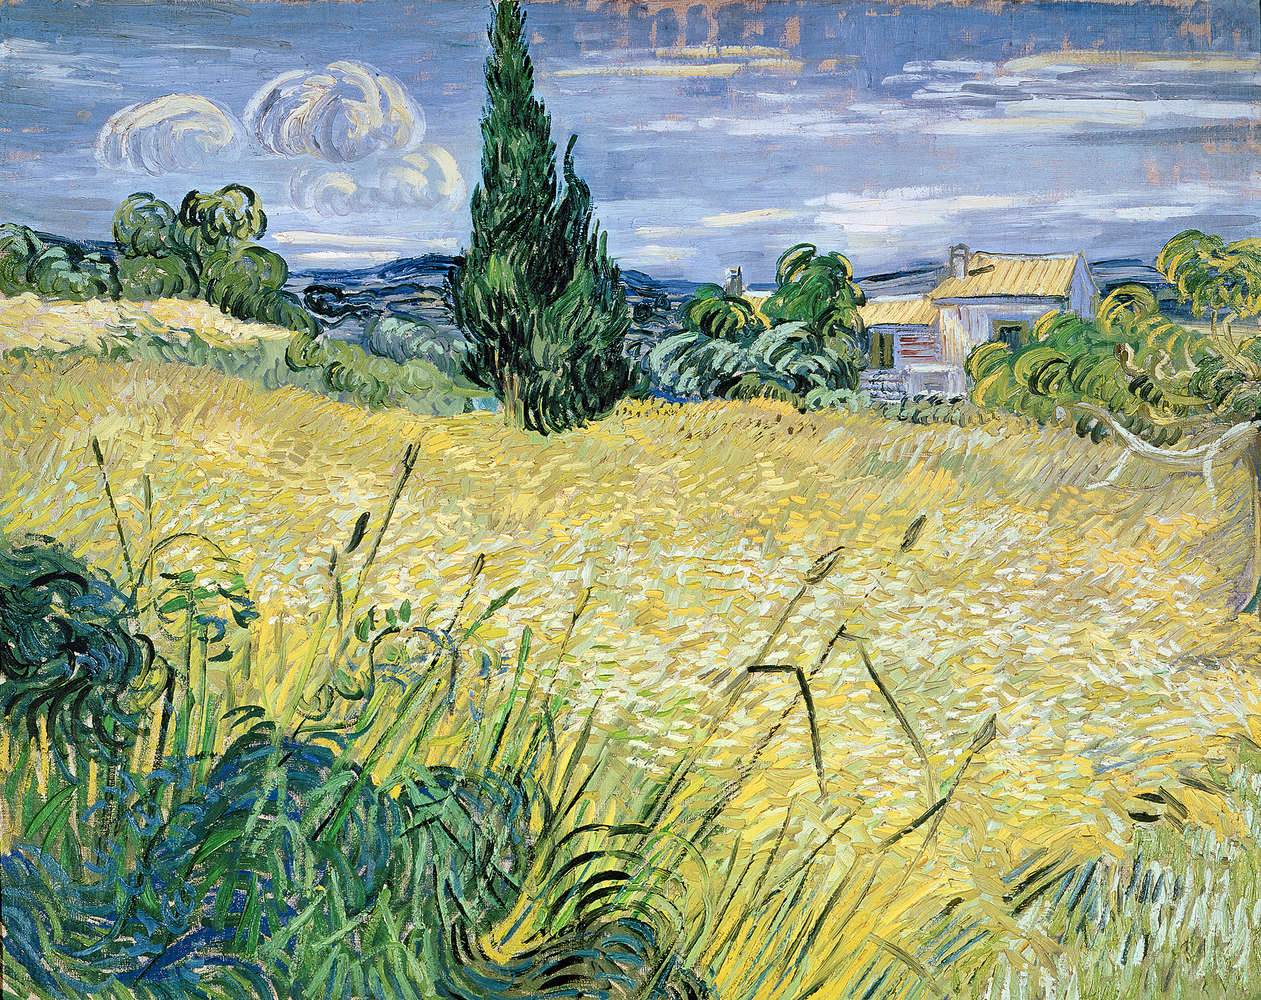             Papier peint "Champ de blé vert avec cyprès" de Vincent van Gogh
        